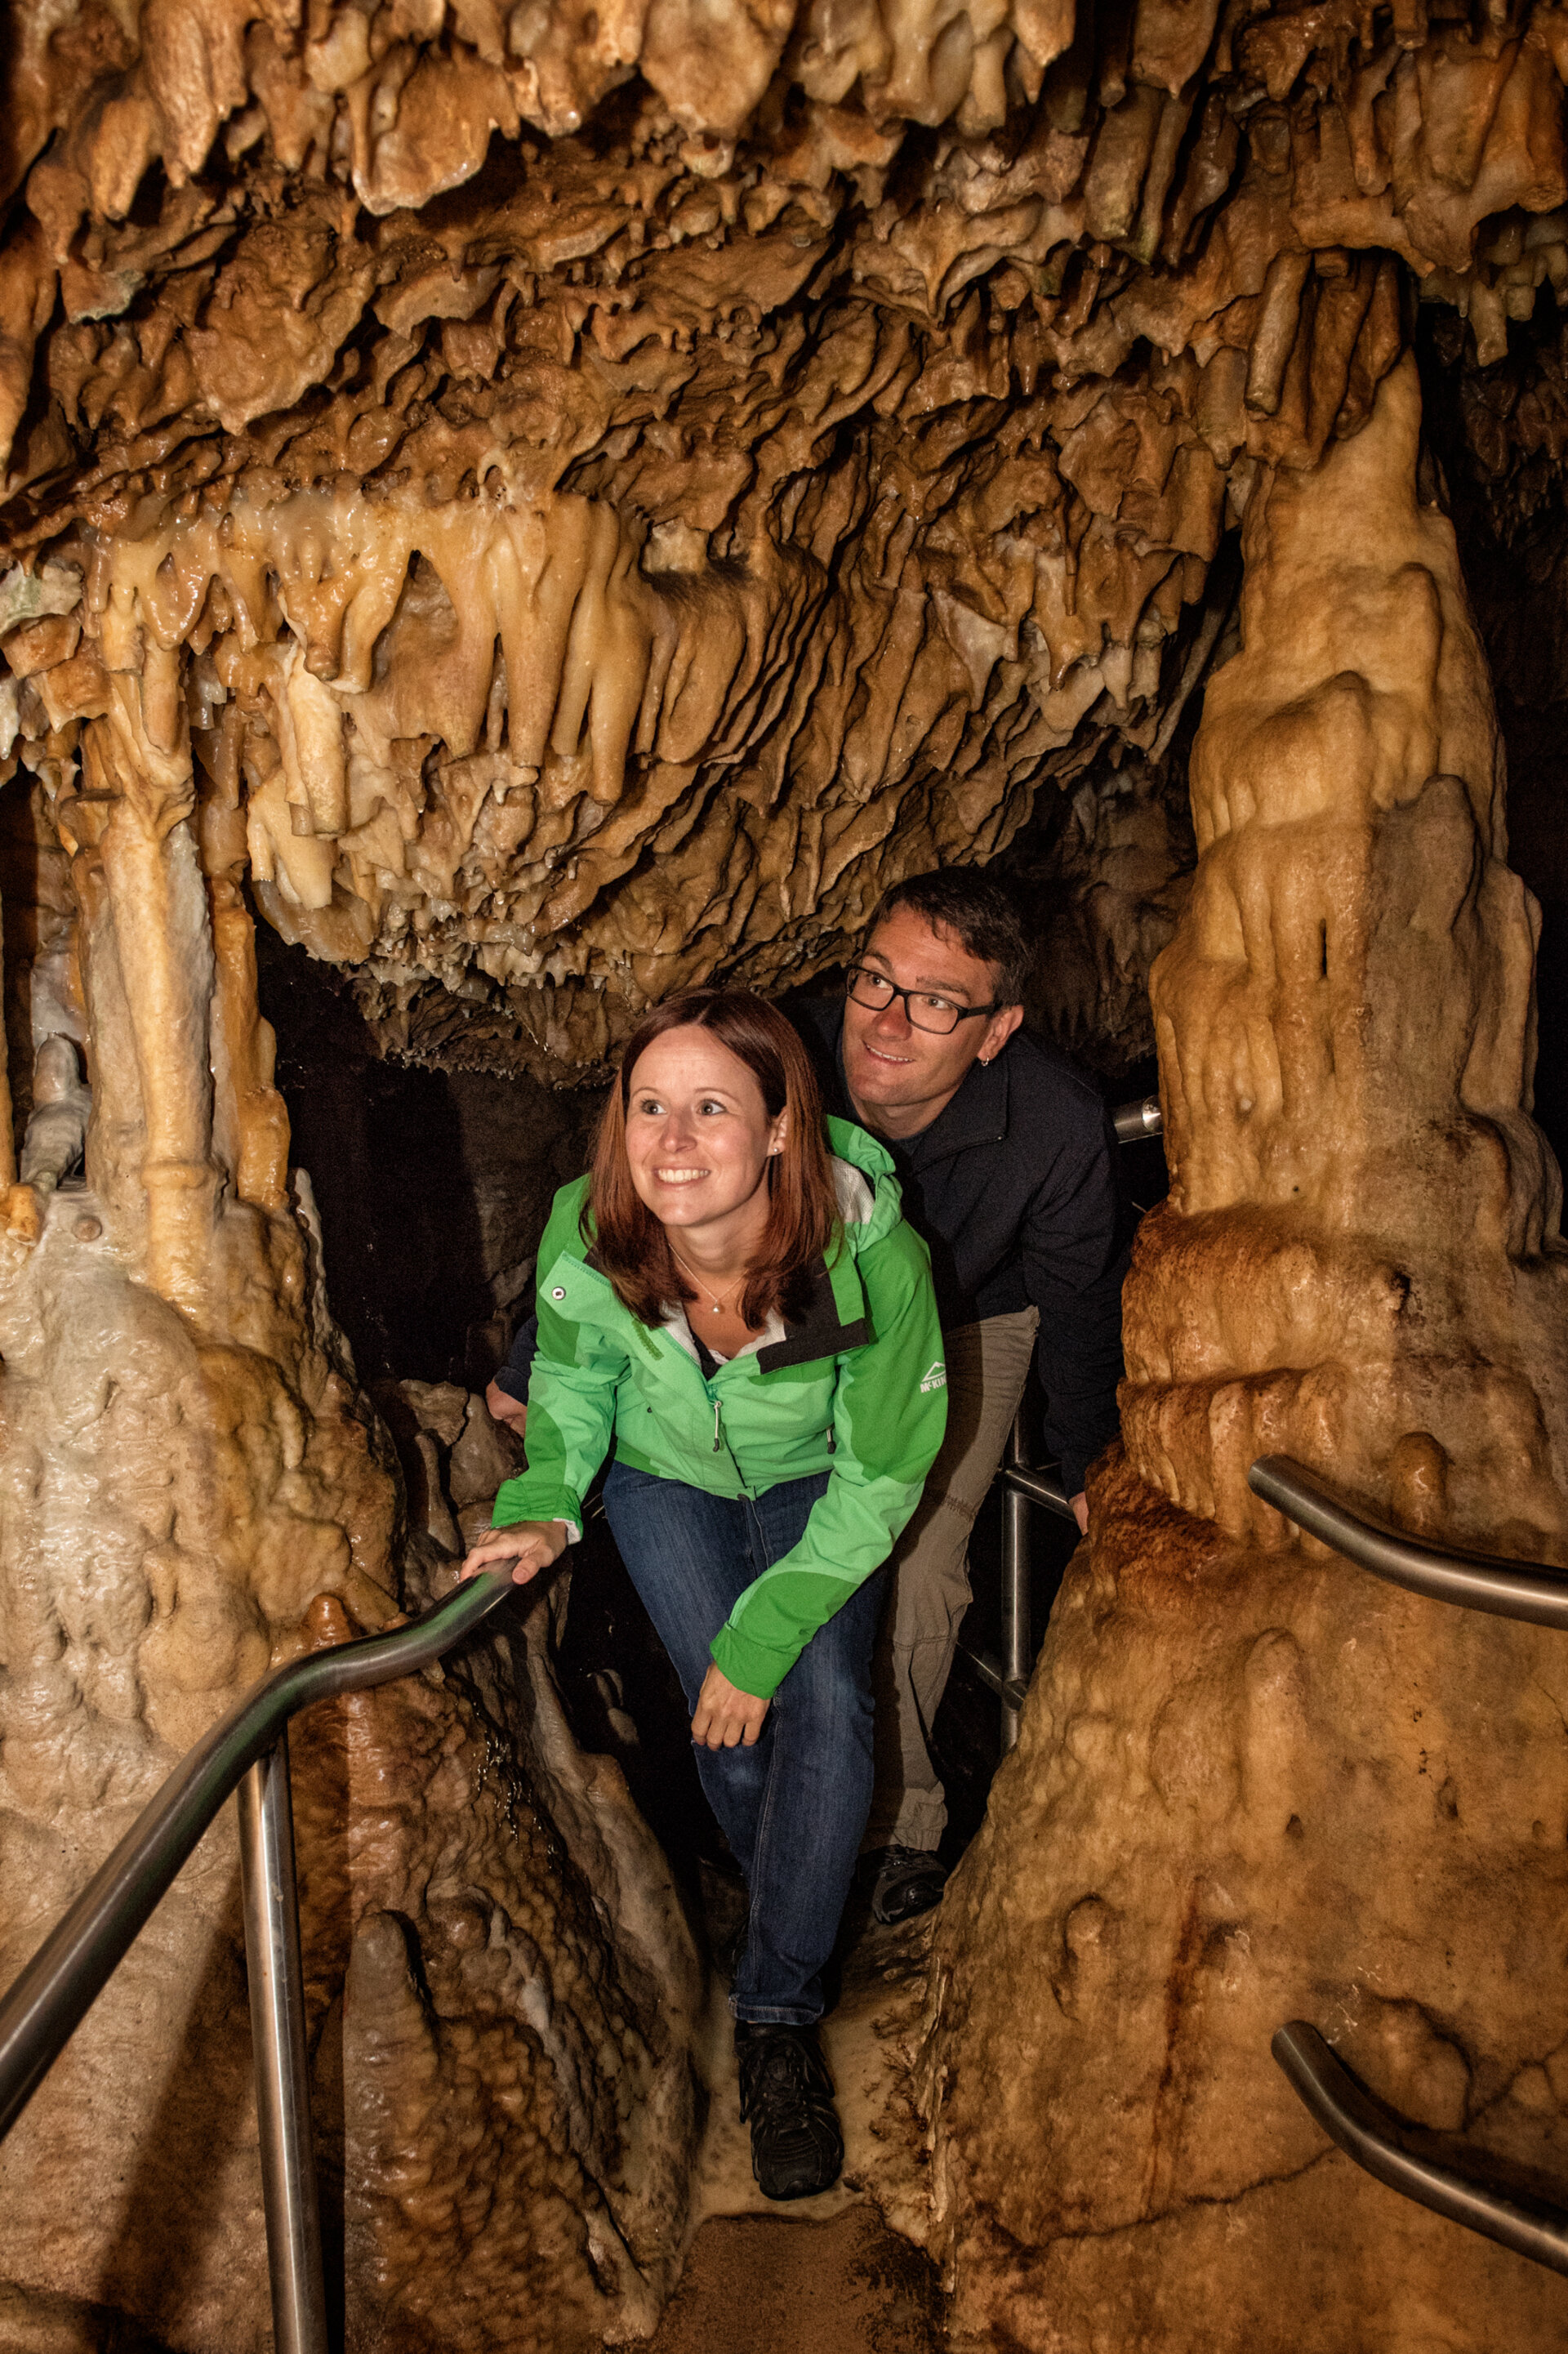 Ein lächelndes Paar läuft geduckt durch eine Höhle. Oben, links und rechts stehen Tropfsteine.